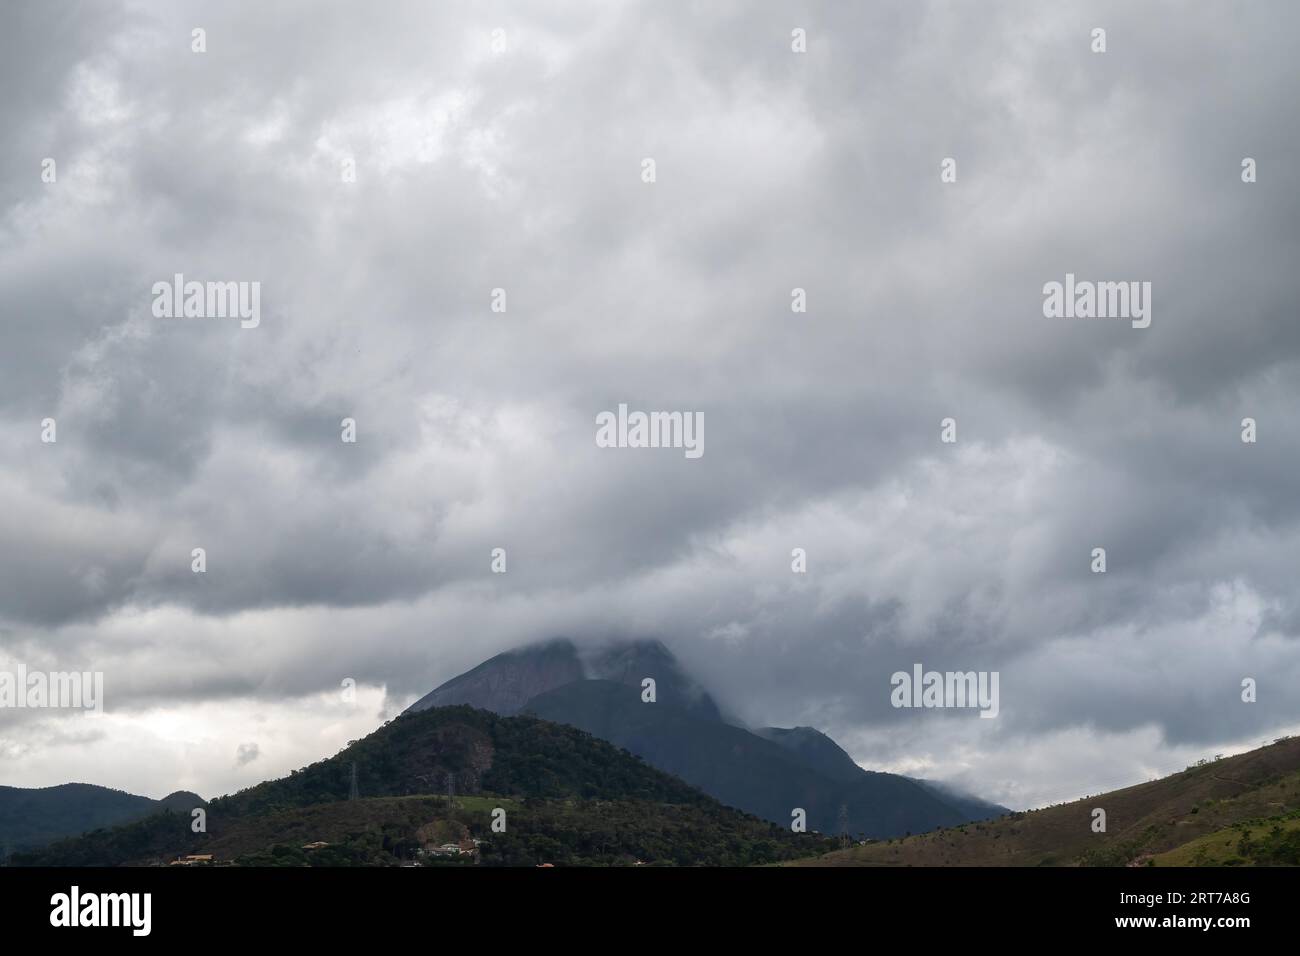 Grande spazio per le copie del cielo, costituito da nuvole che si affacciano su una montagna a Itaipava, Petropolis, Rio de Janeiro, Brasile Foto Stock